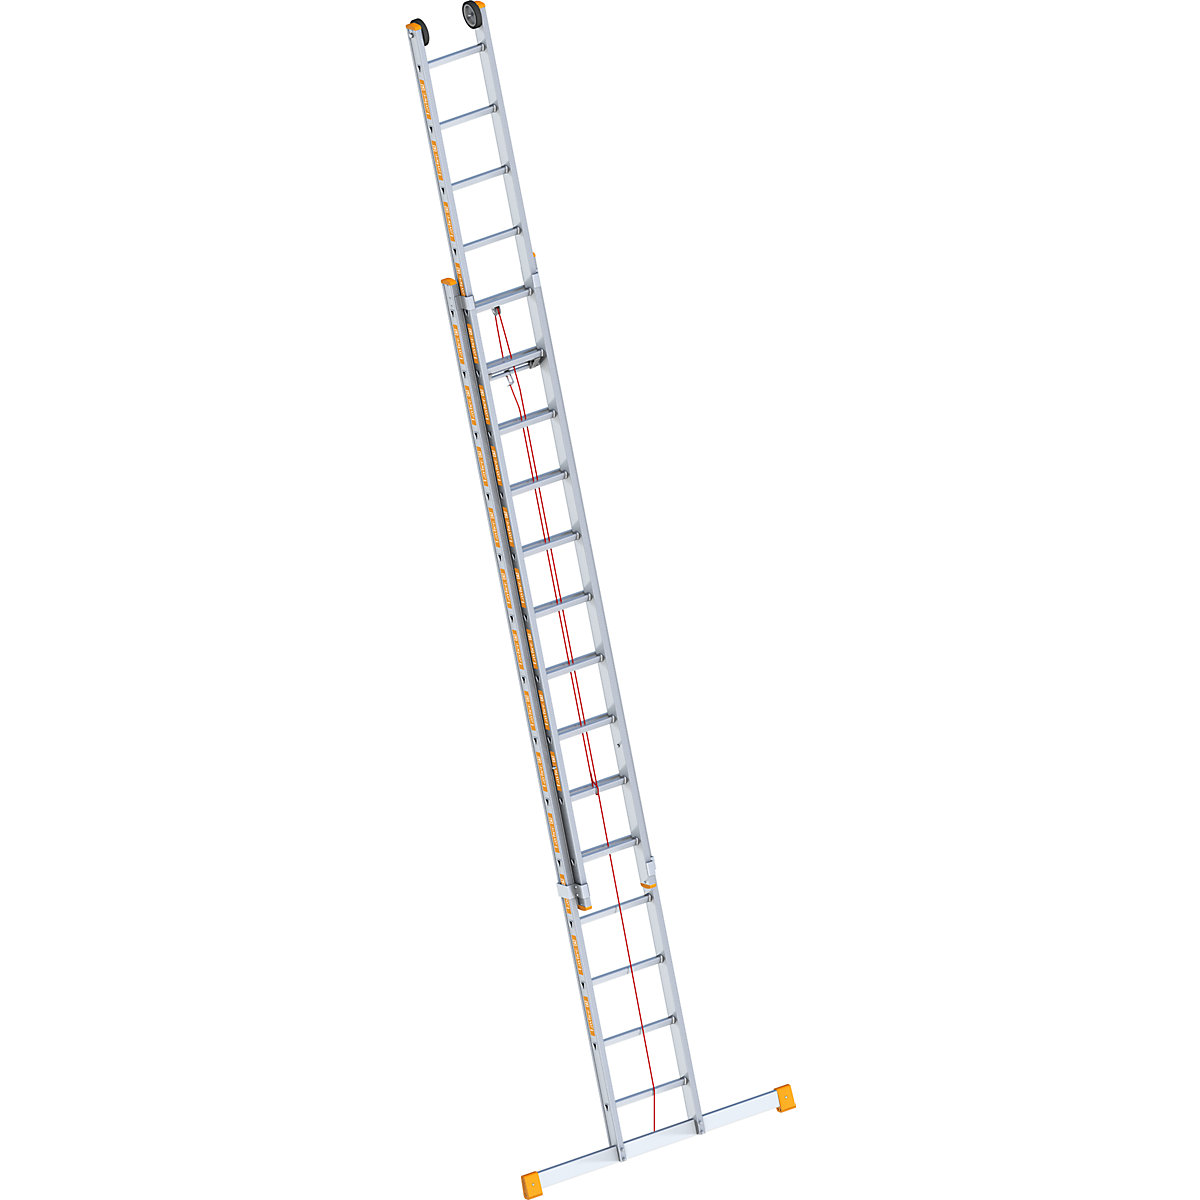 Escabeau-escalier – Layher: avec mise à niveau, accès des deux